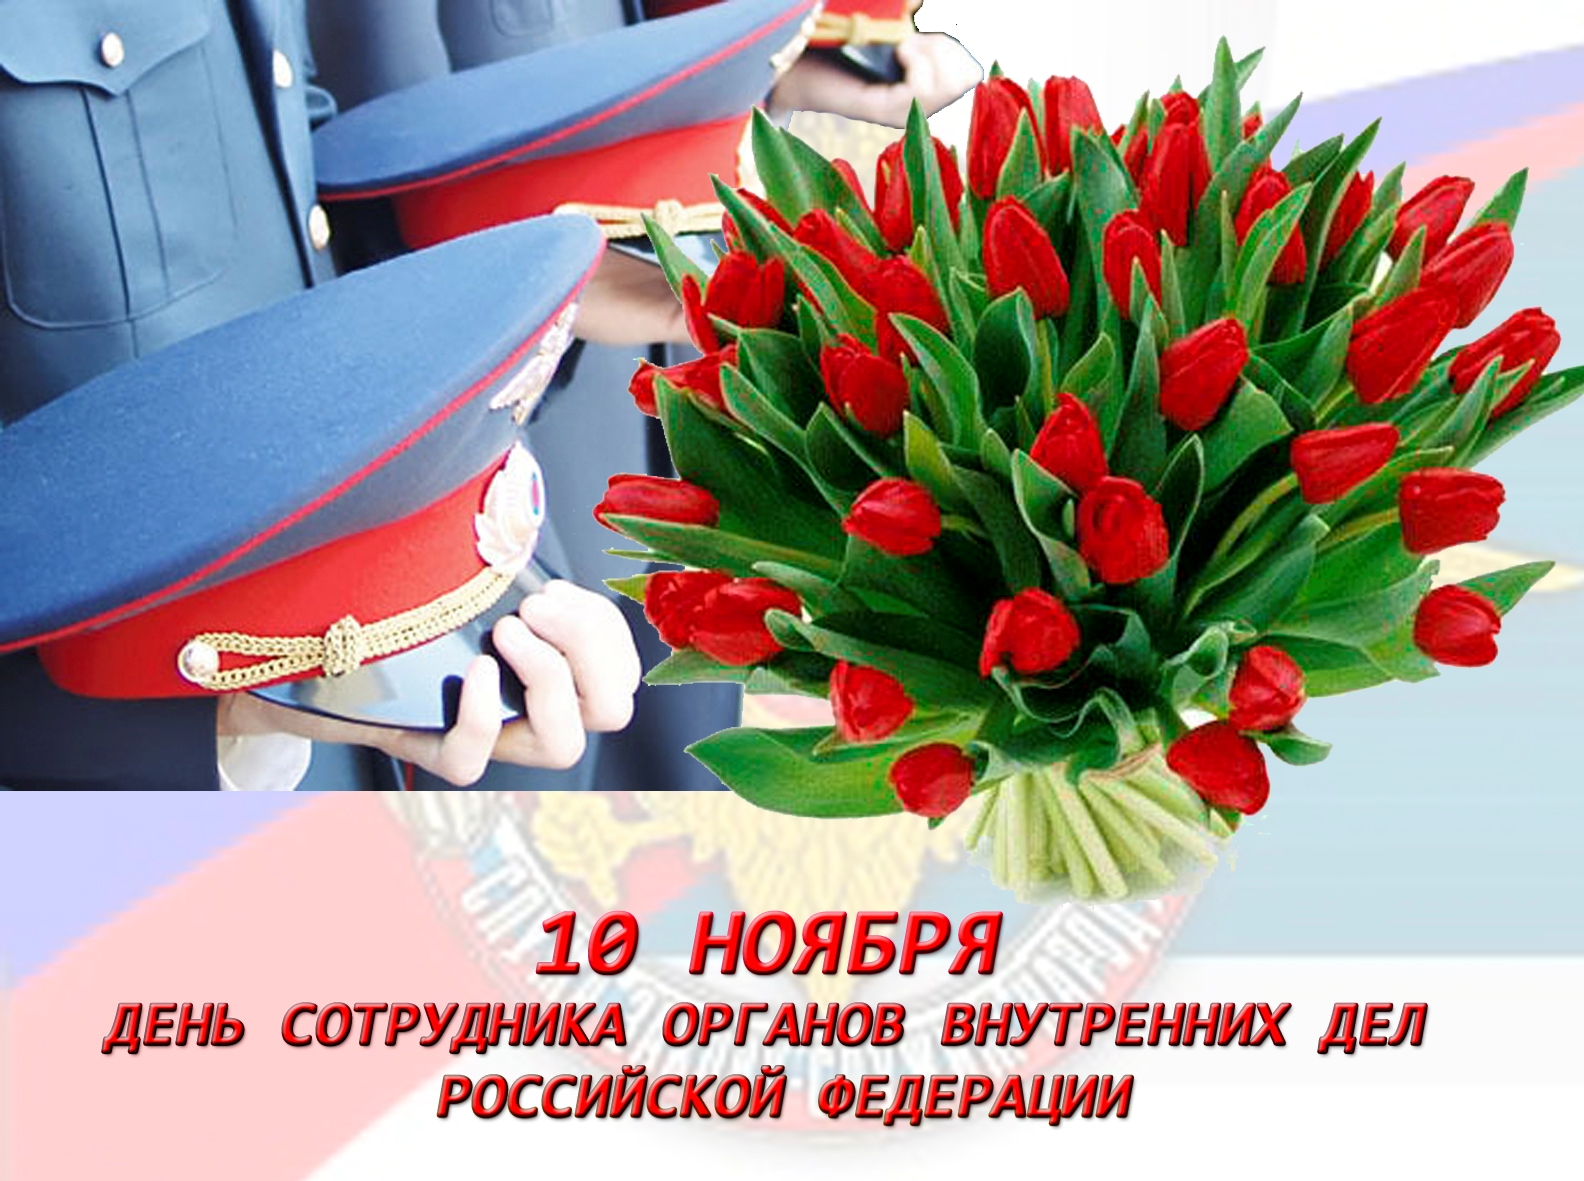 Картинки С Днем сотрудника органов внутренних дел России (35 открыток)